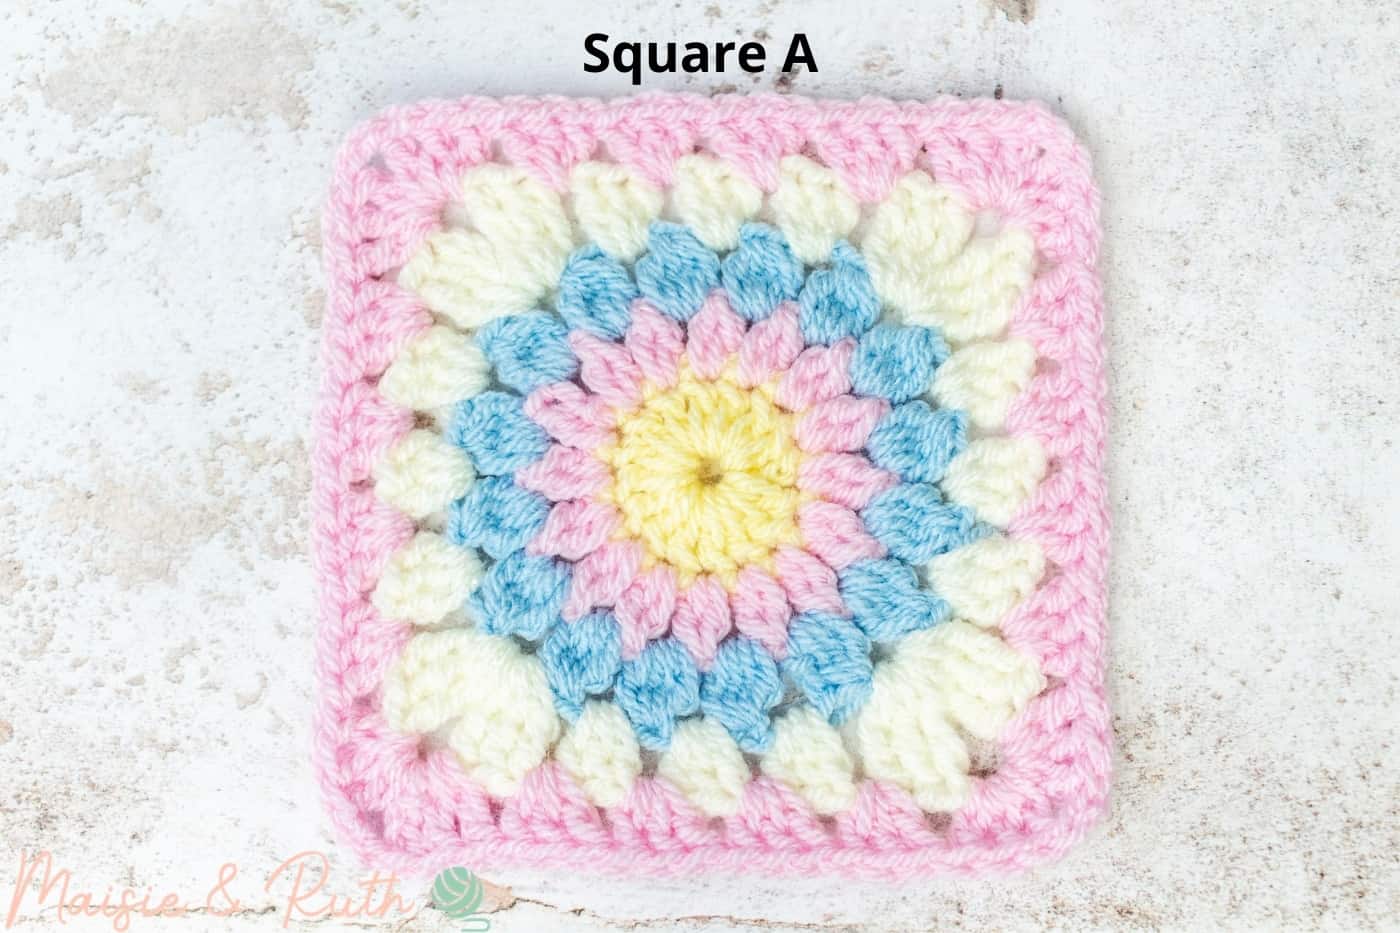 Square A Crochet Granny Square Blanket